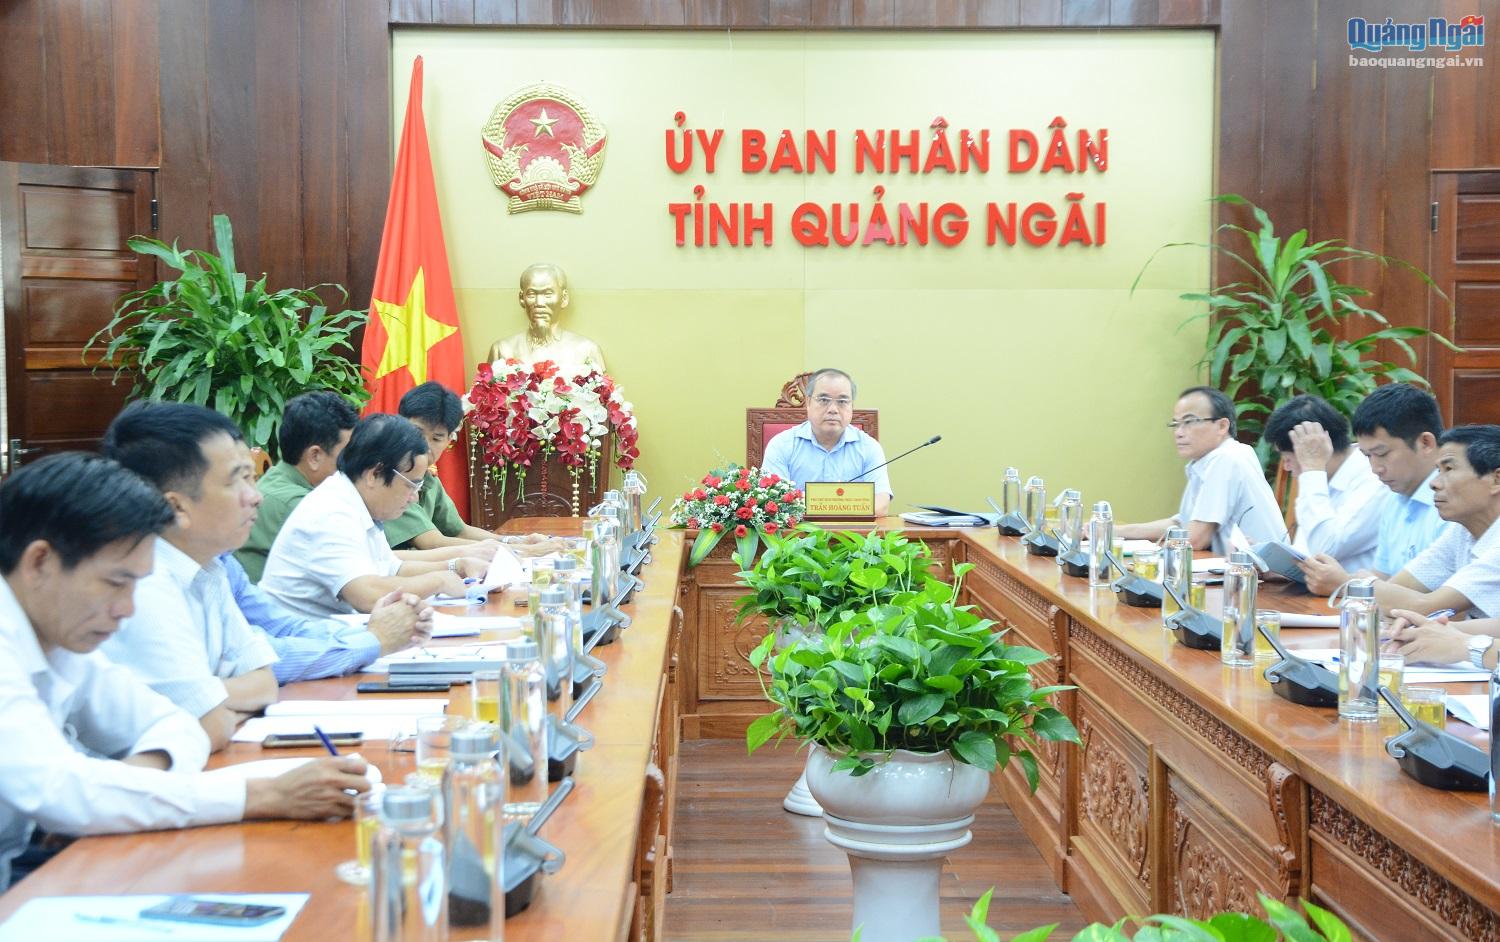 Phó Chủ tịch Thường trực UBND tỉnh Trần Hoàng Tuấn chủ trì hội nghị tại điểm cầu Quảng Ngãi.